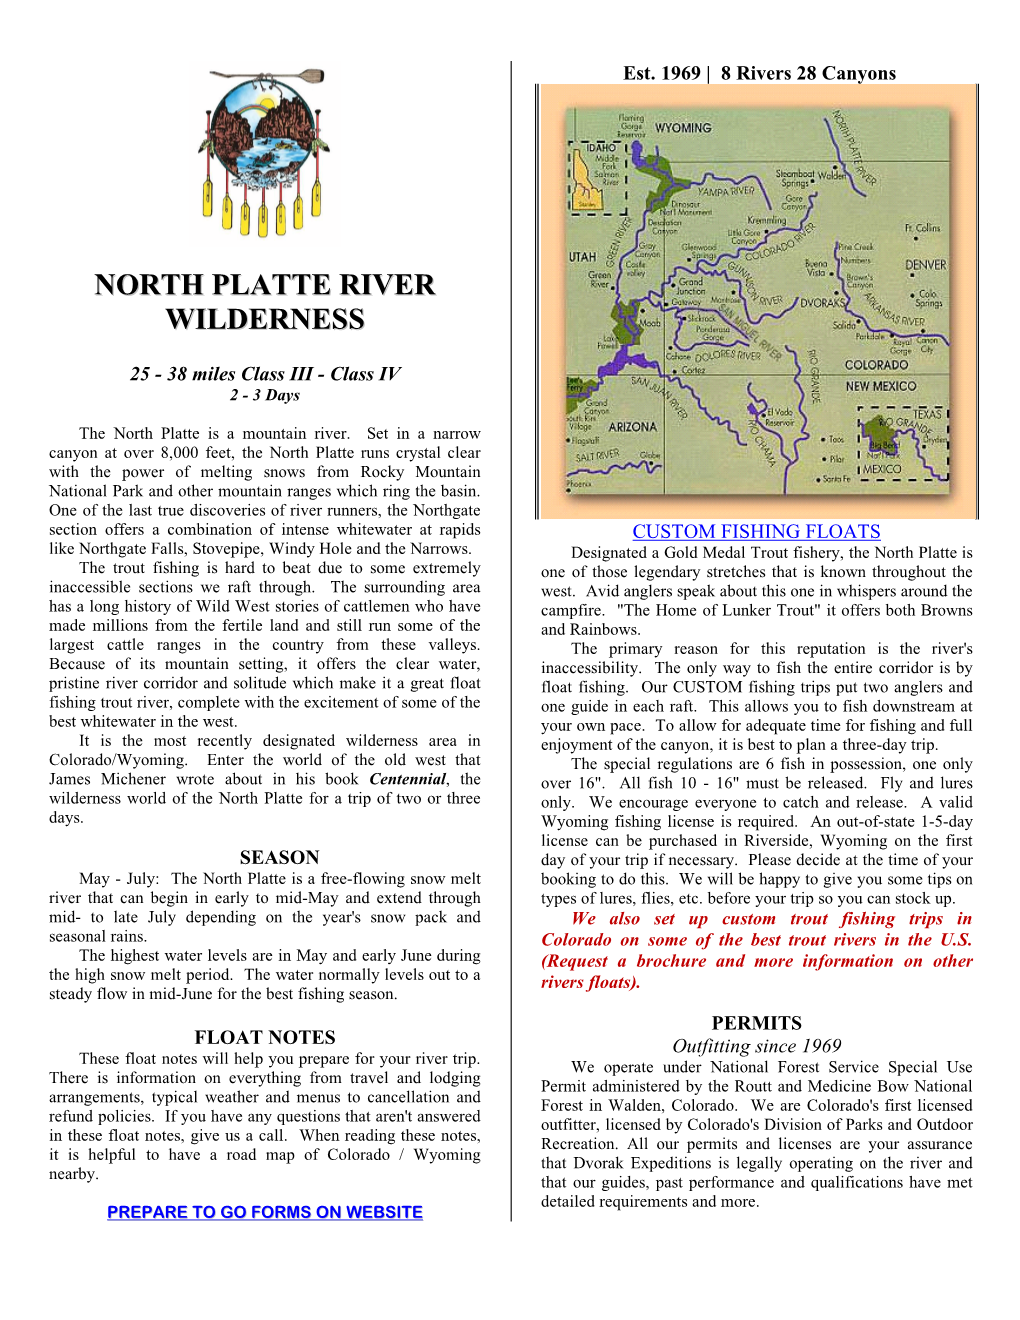 North Platte River Wilderness